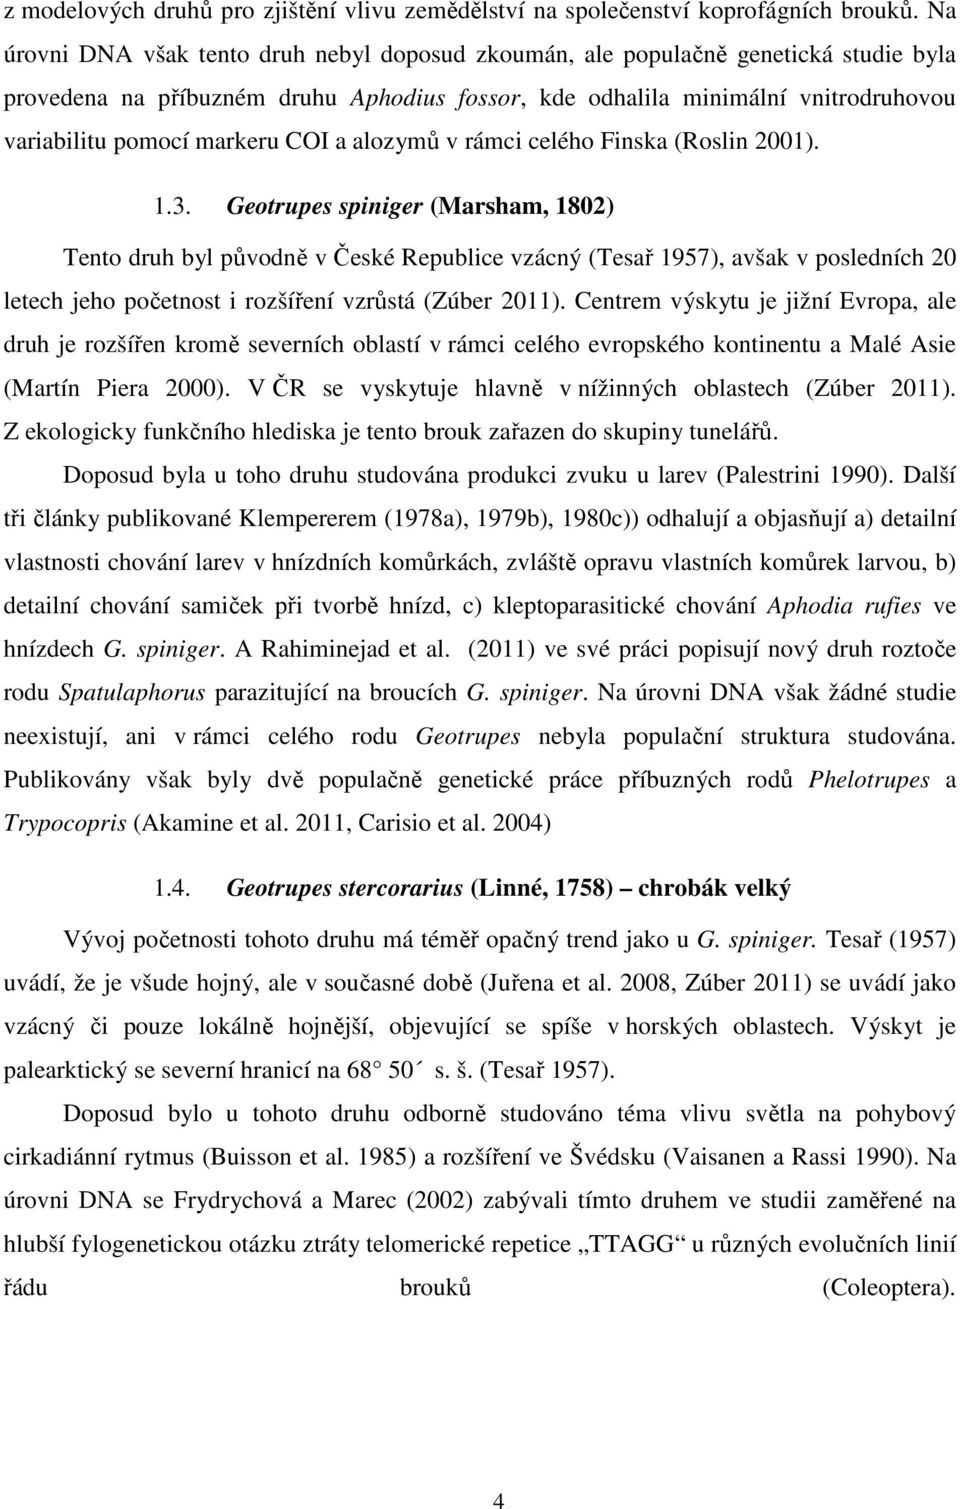 COI a alozymů v rámci celého Finska (Roslin 2001). 1.3.